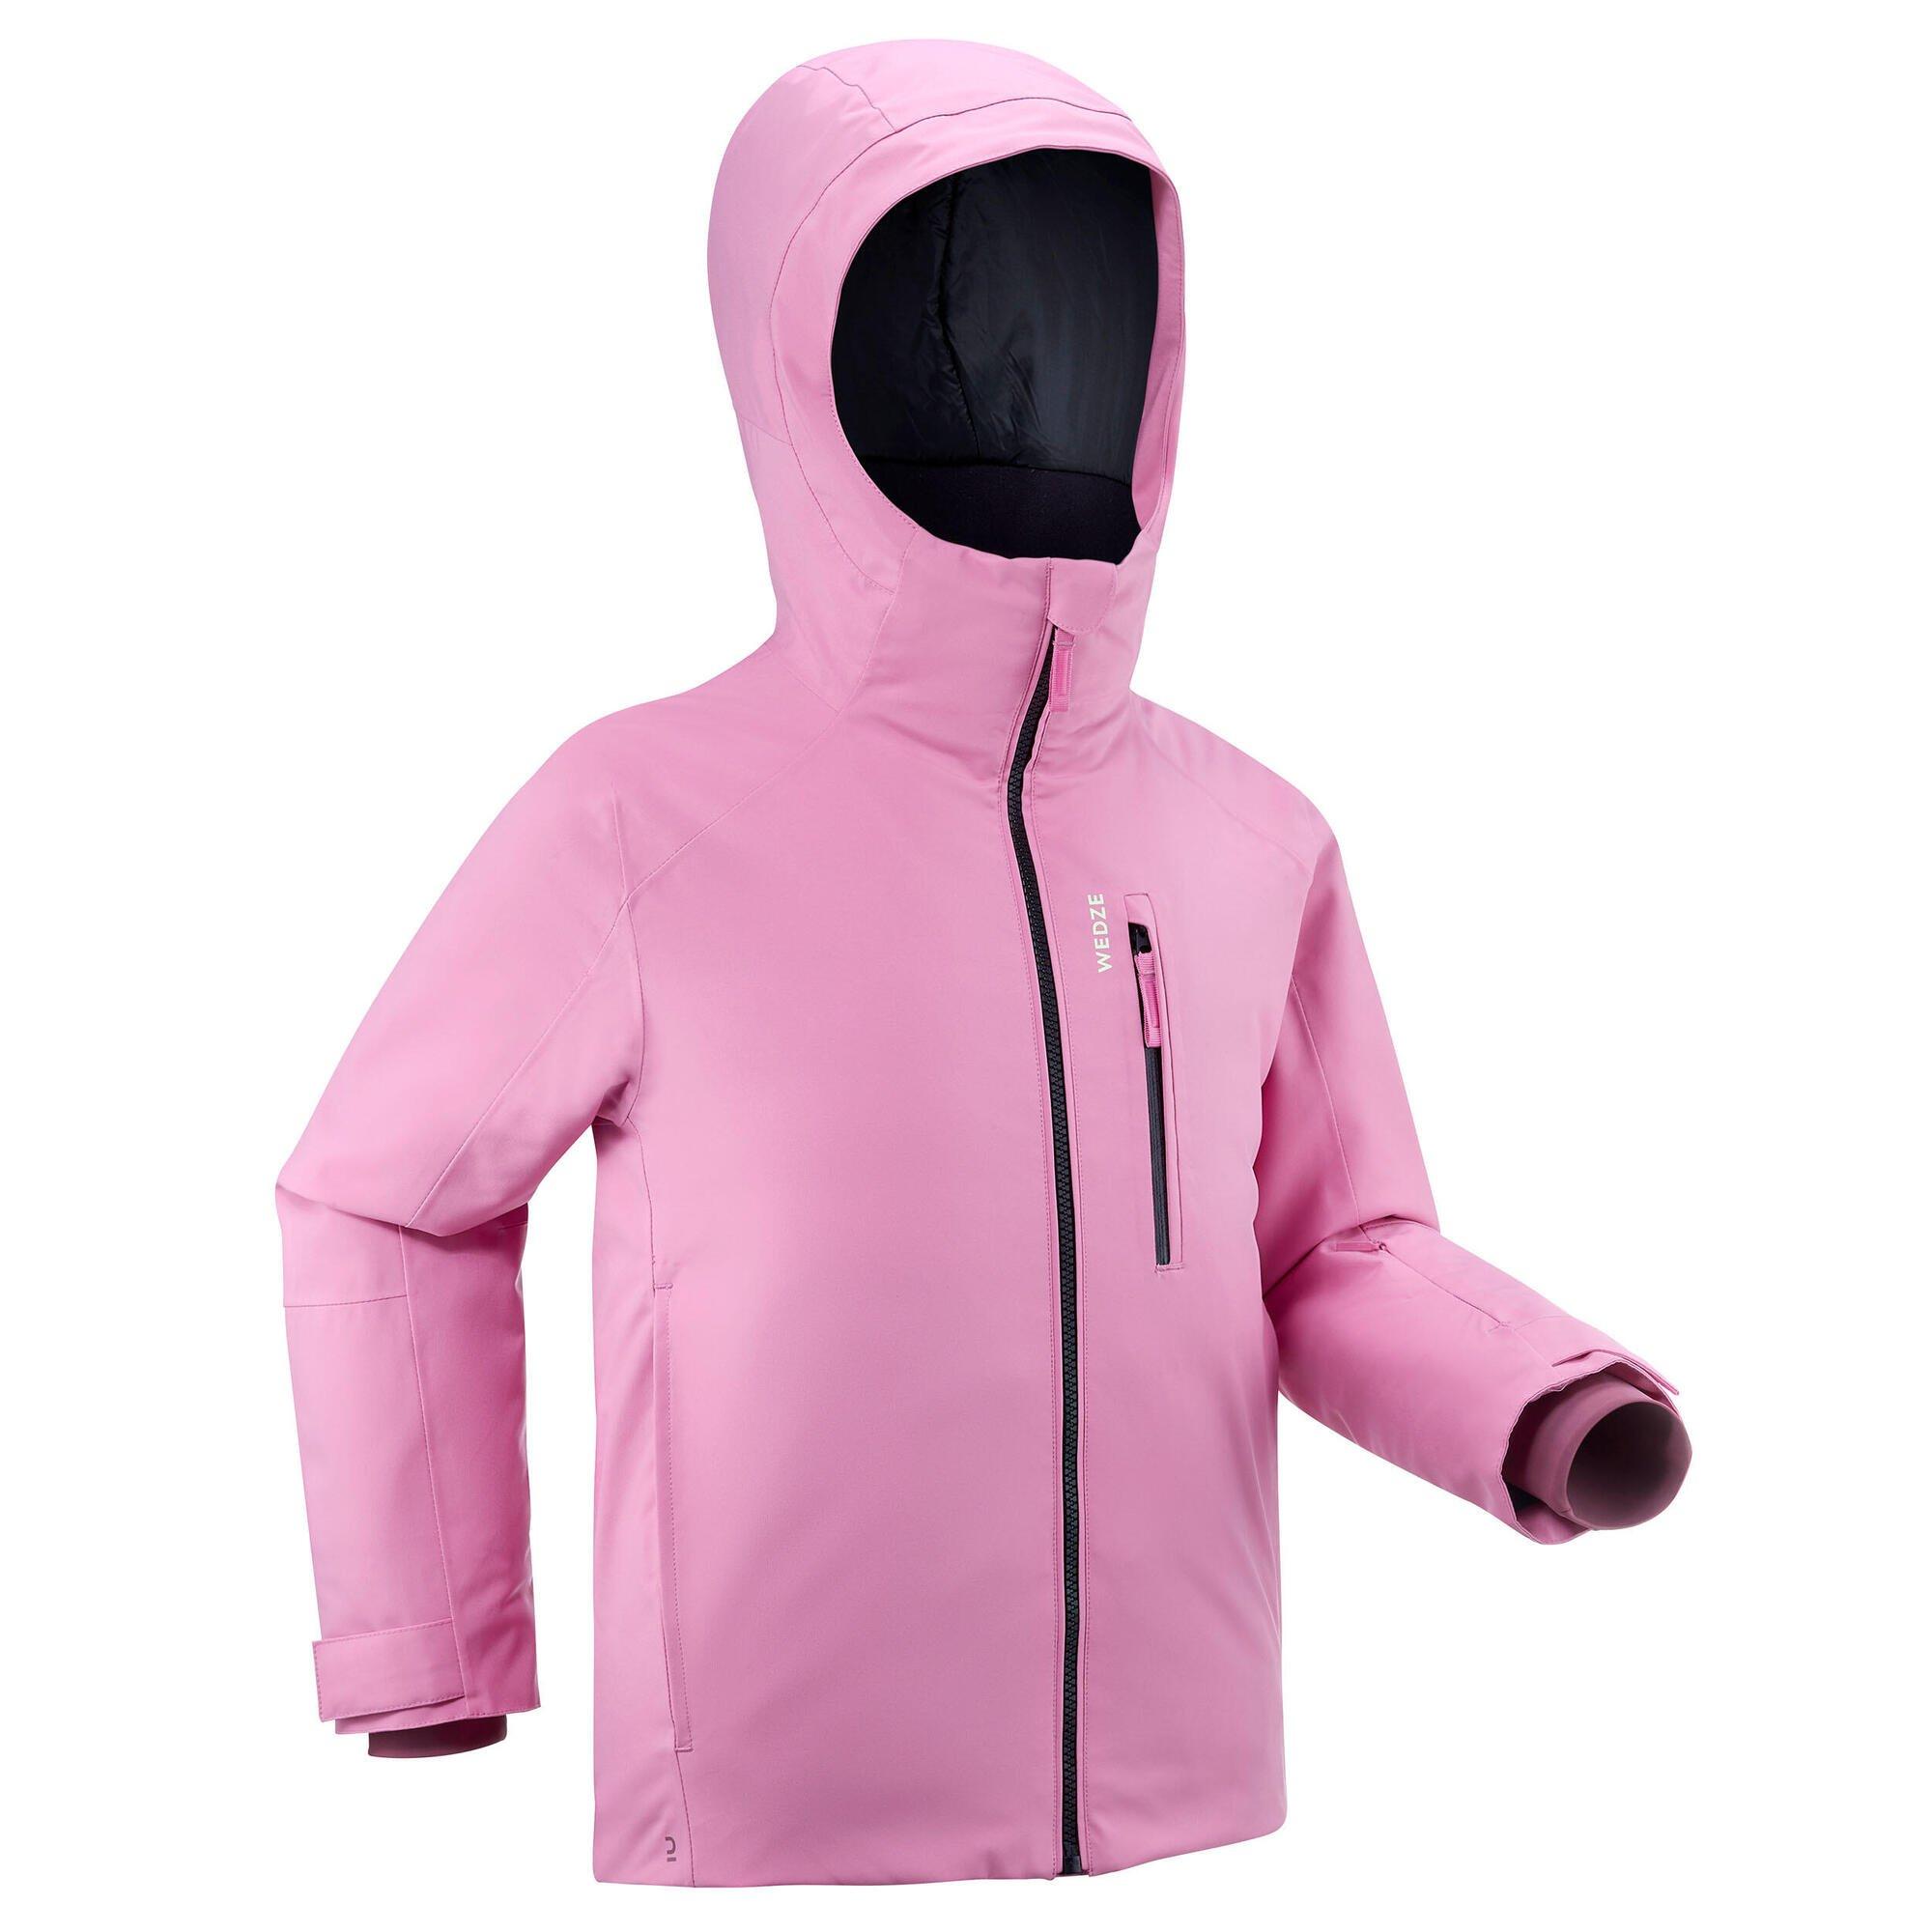 Теплая и водонепроницаемая лыжная куртка Decathlon 550 Wedze, розовый